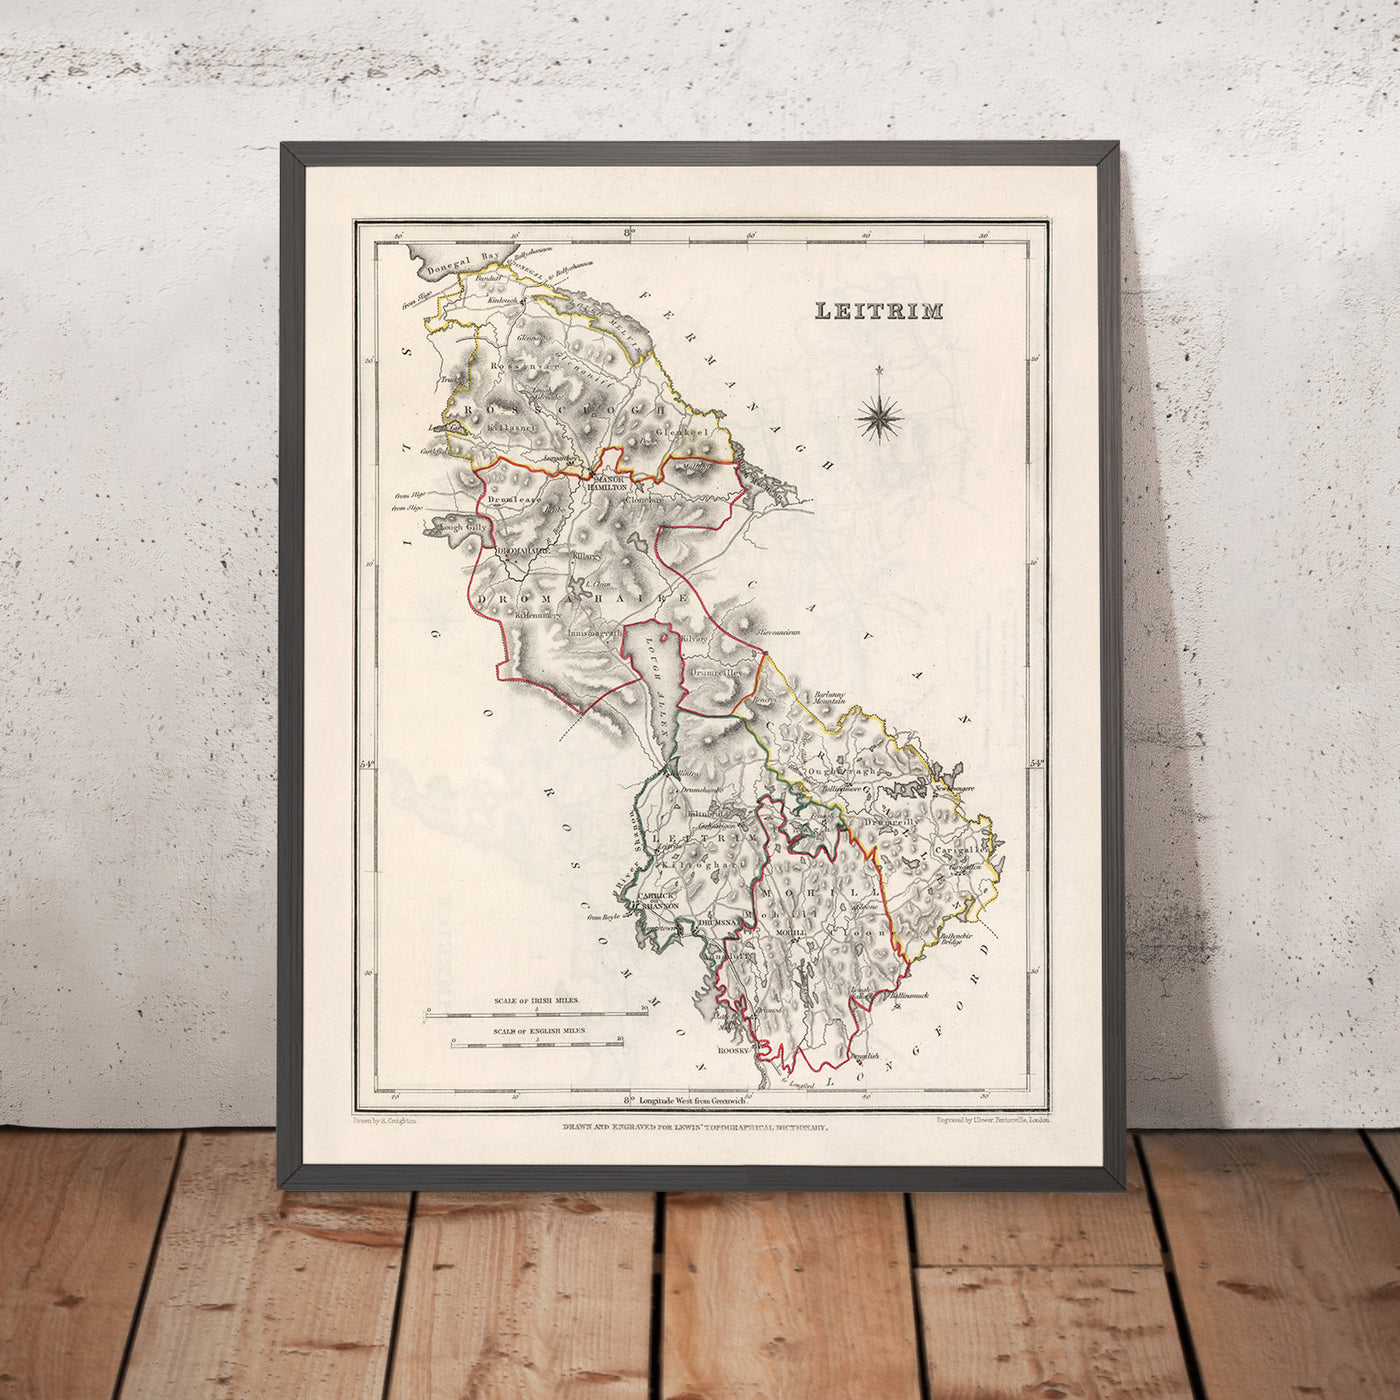 Alte Karte der Grafschaft Leitrim von Samuel Lewis, 1844: Carrick-on-Shannon, Manorhamilton, Drumshanbo, Dromahair, Lough Allen